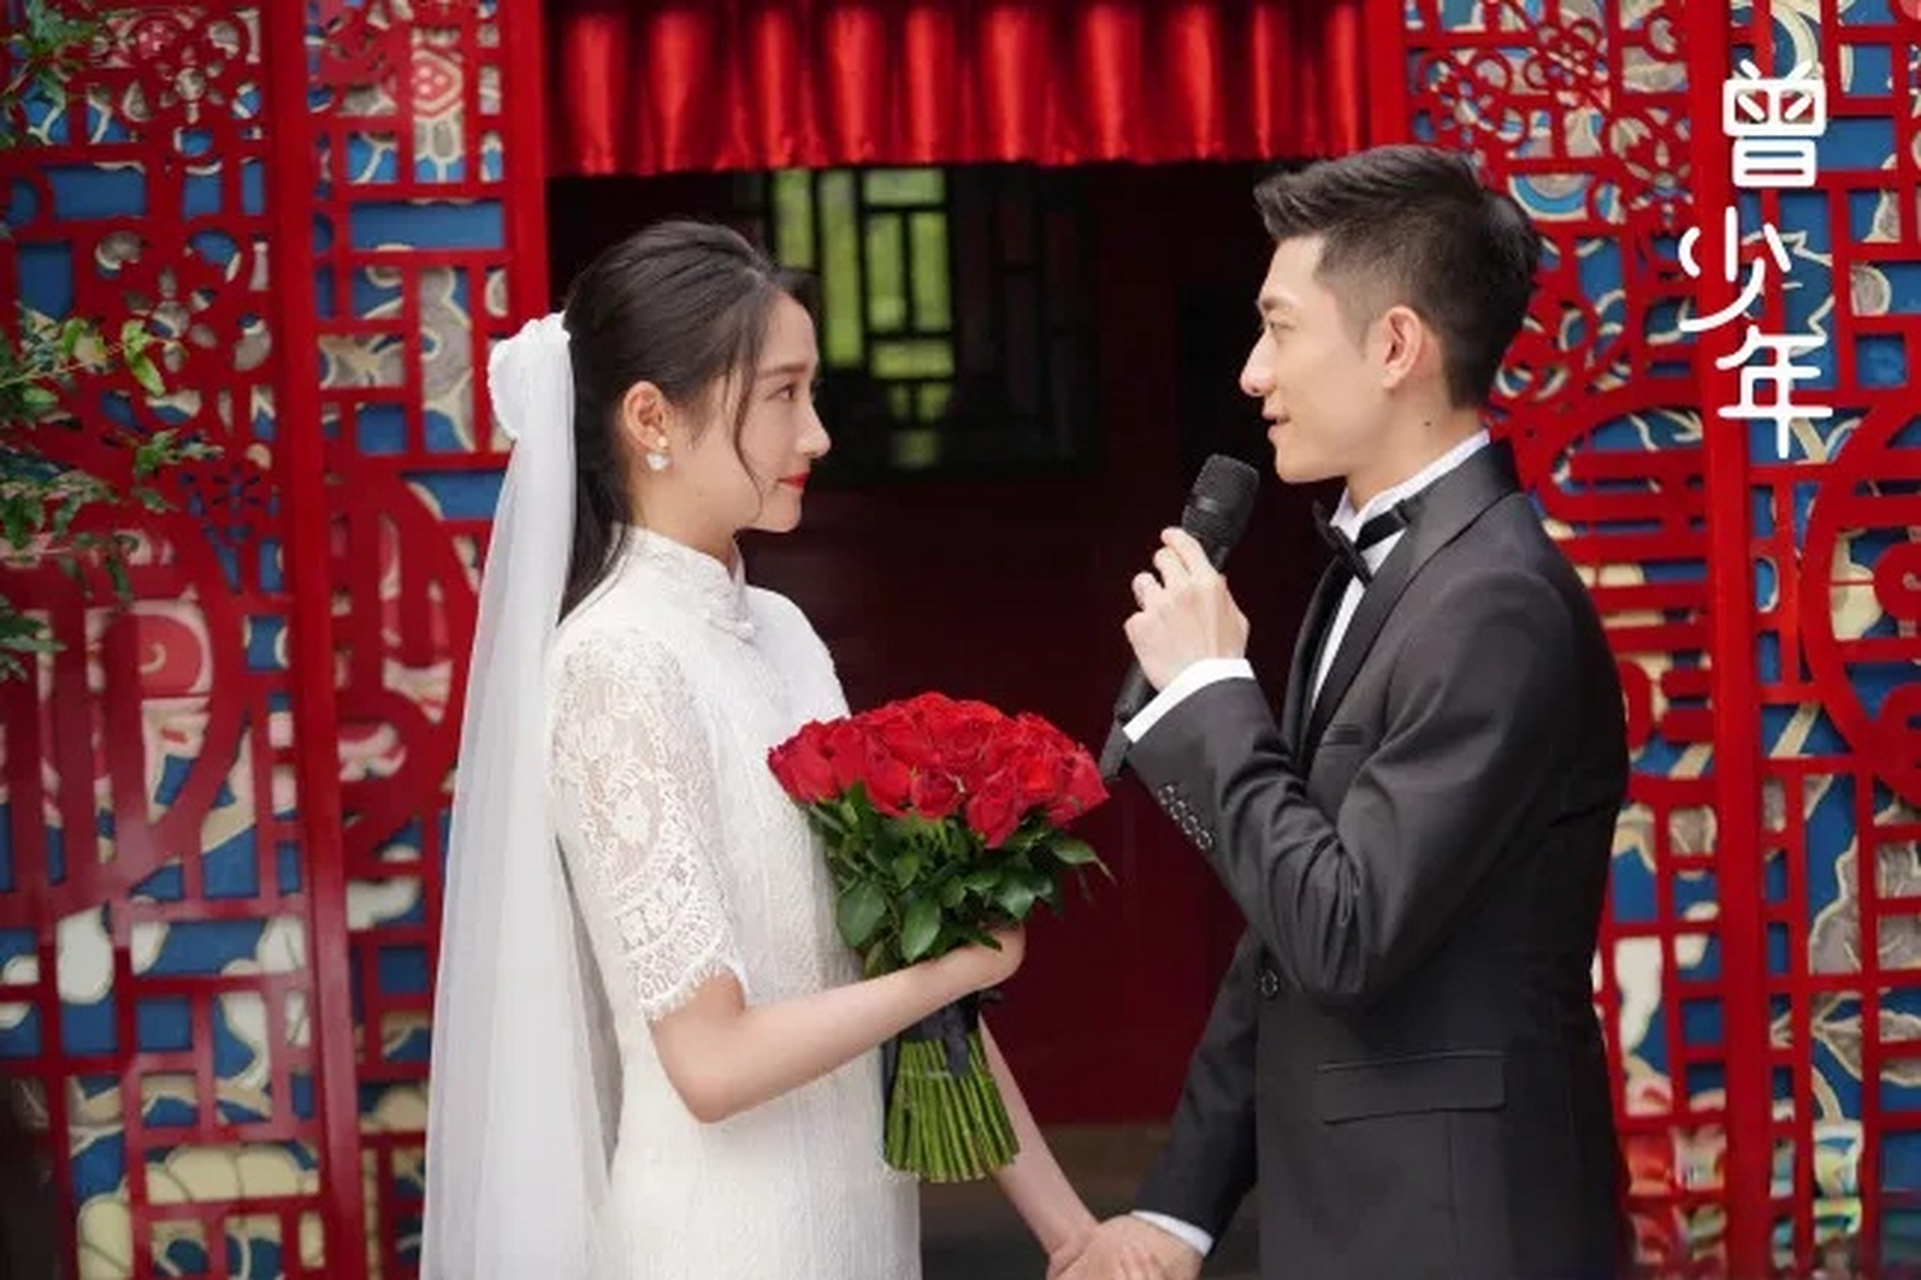 一次采访中,张一山被问:如果杨紫结婚了,你随多少礼啊?